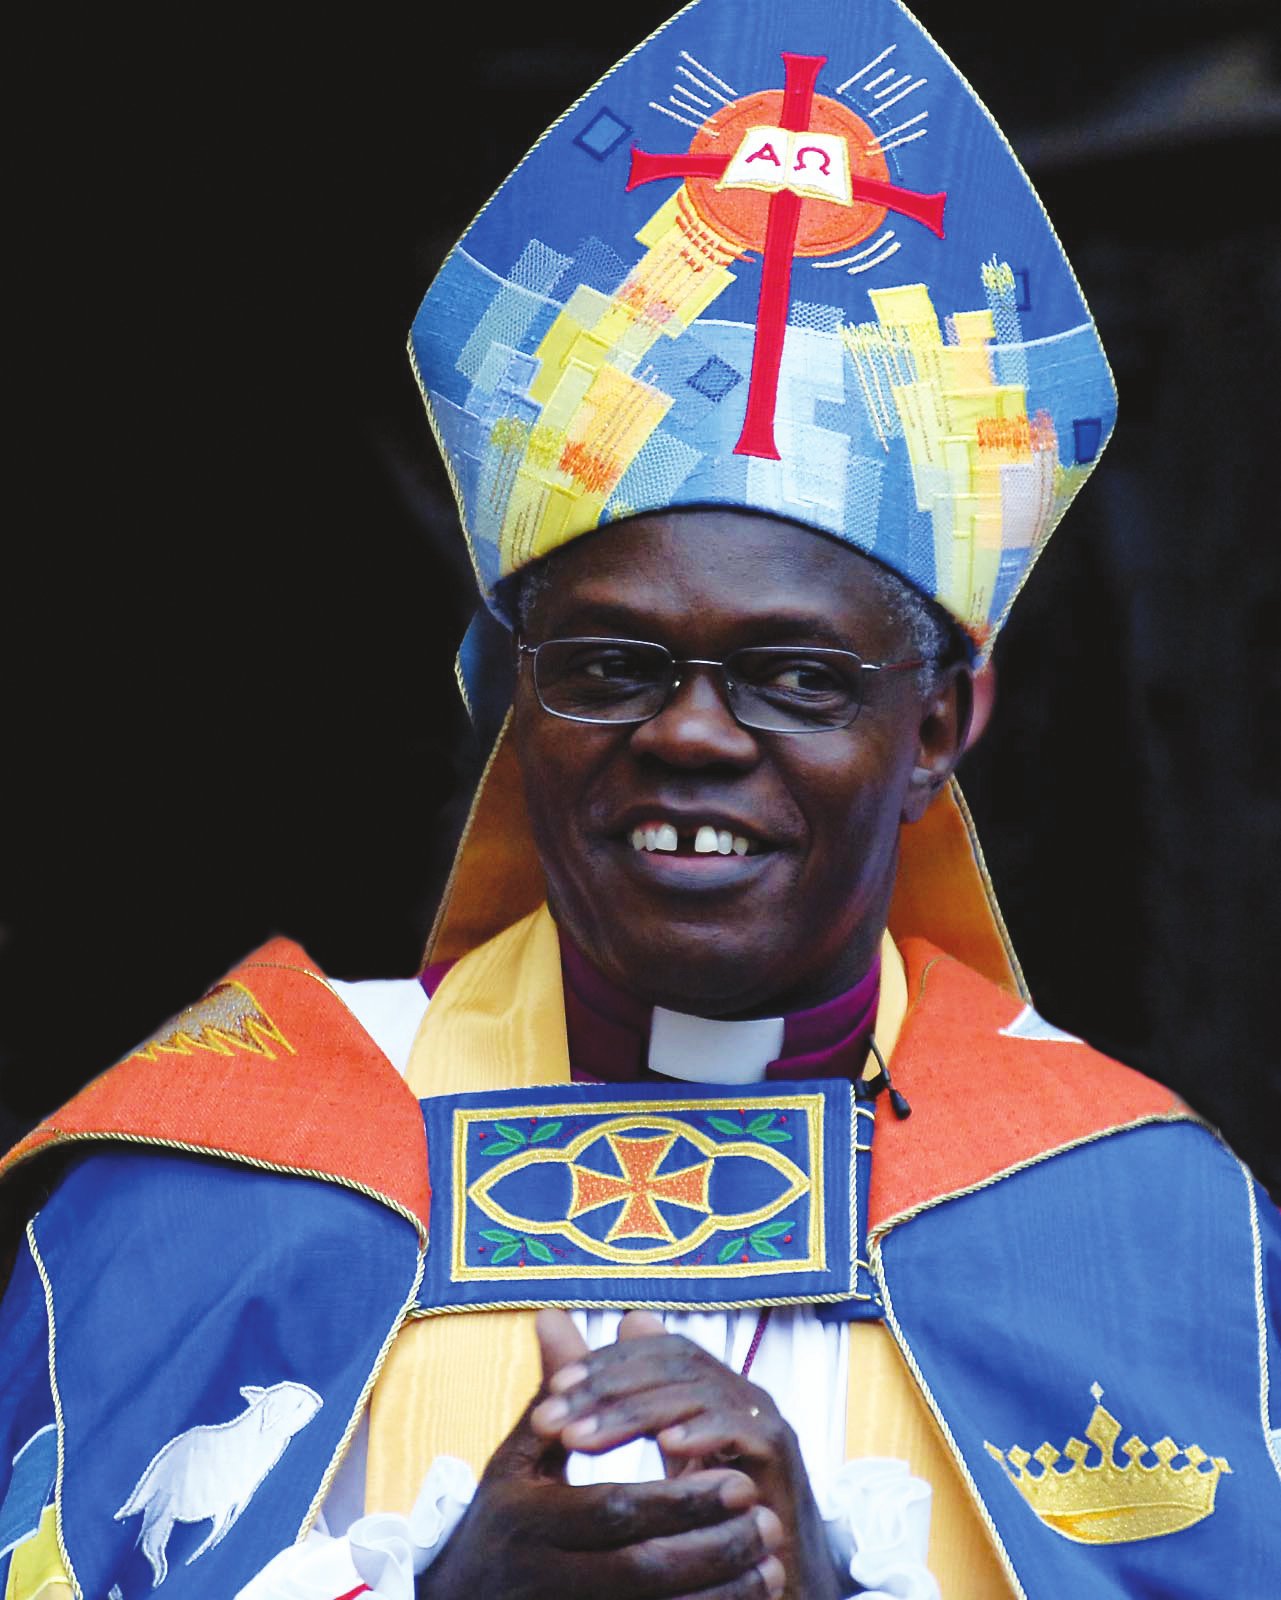 Image of Archbishop of York, John Sentamu